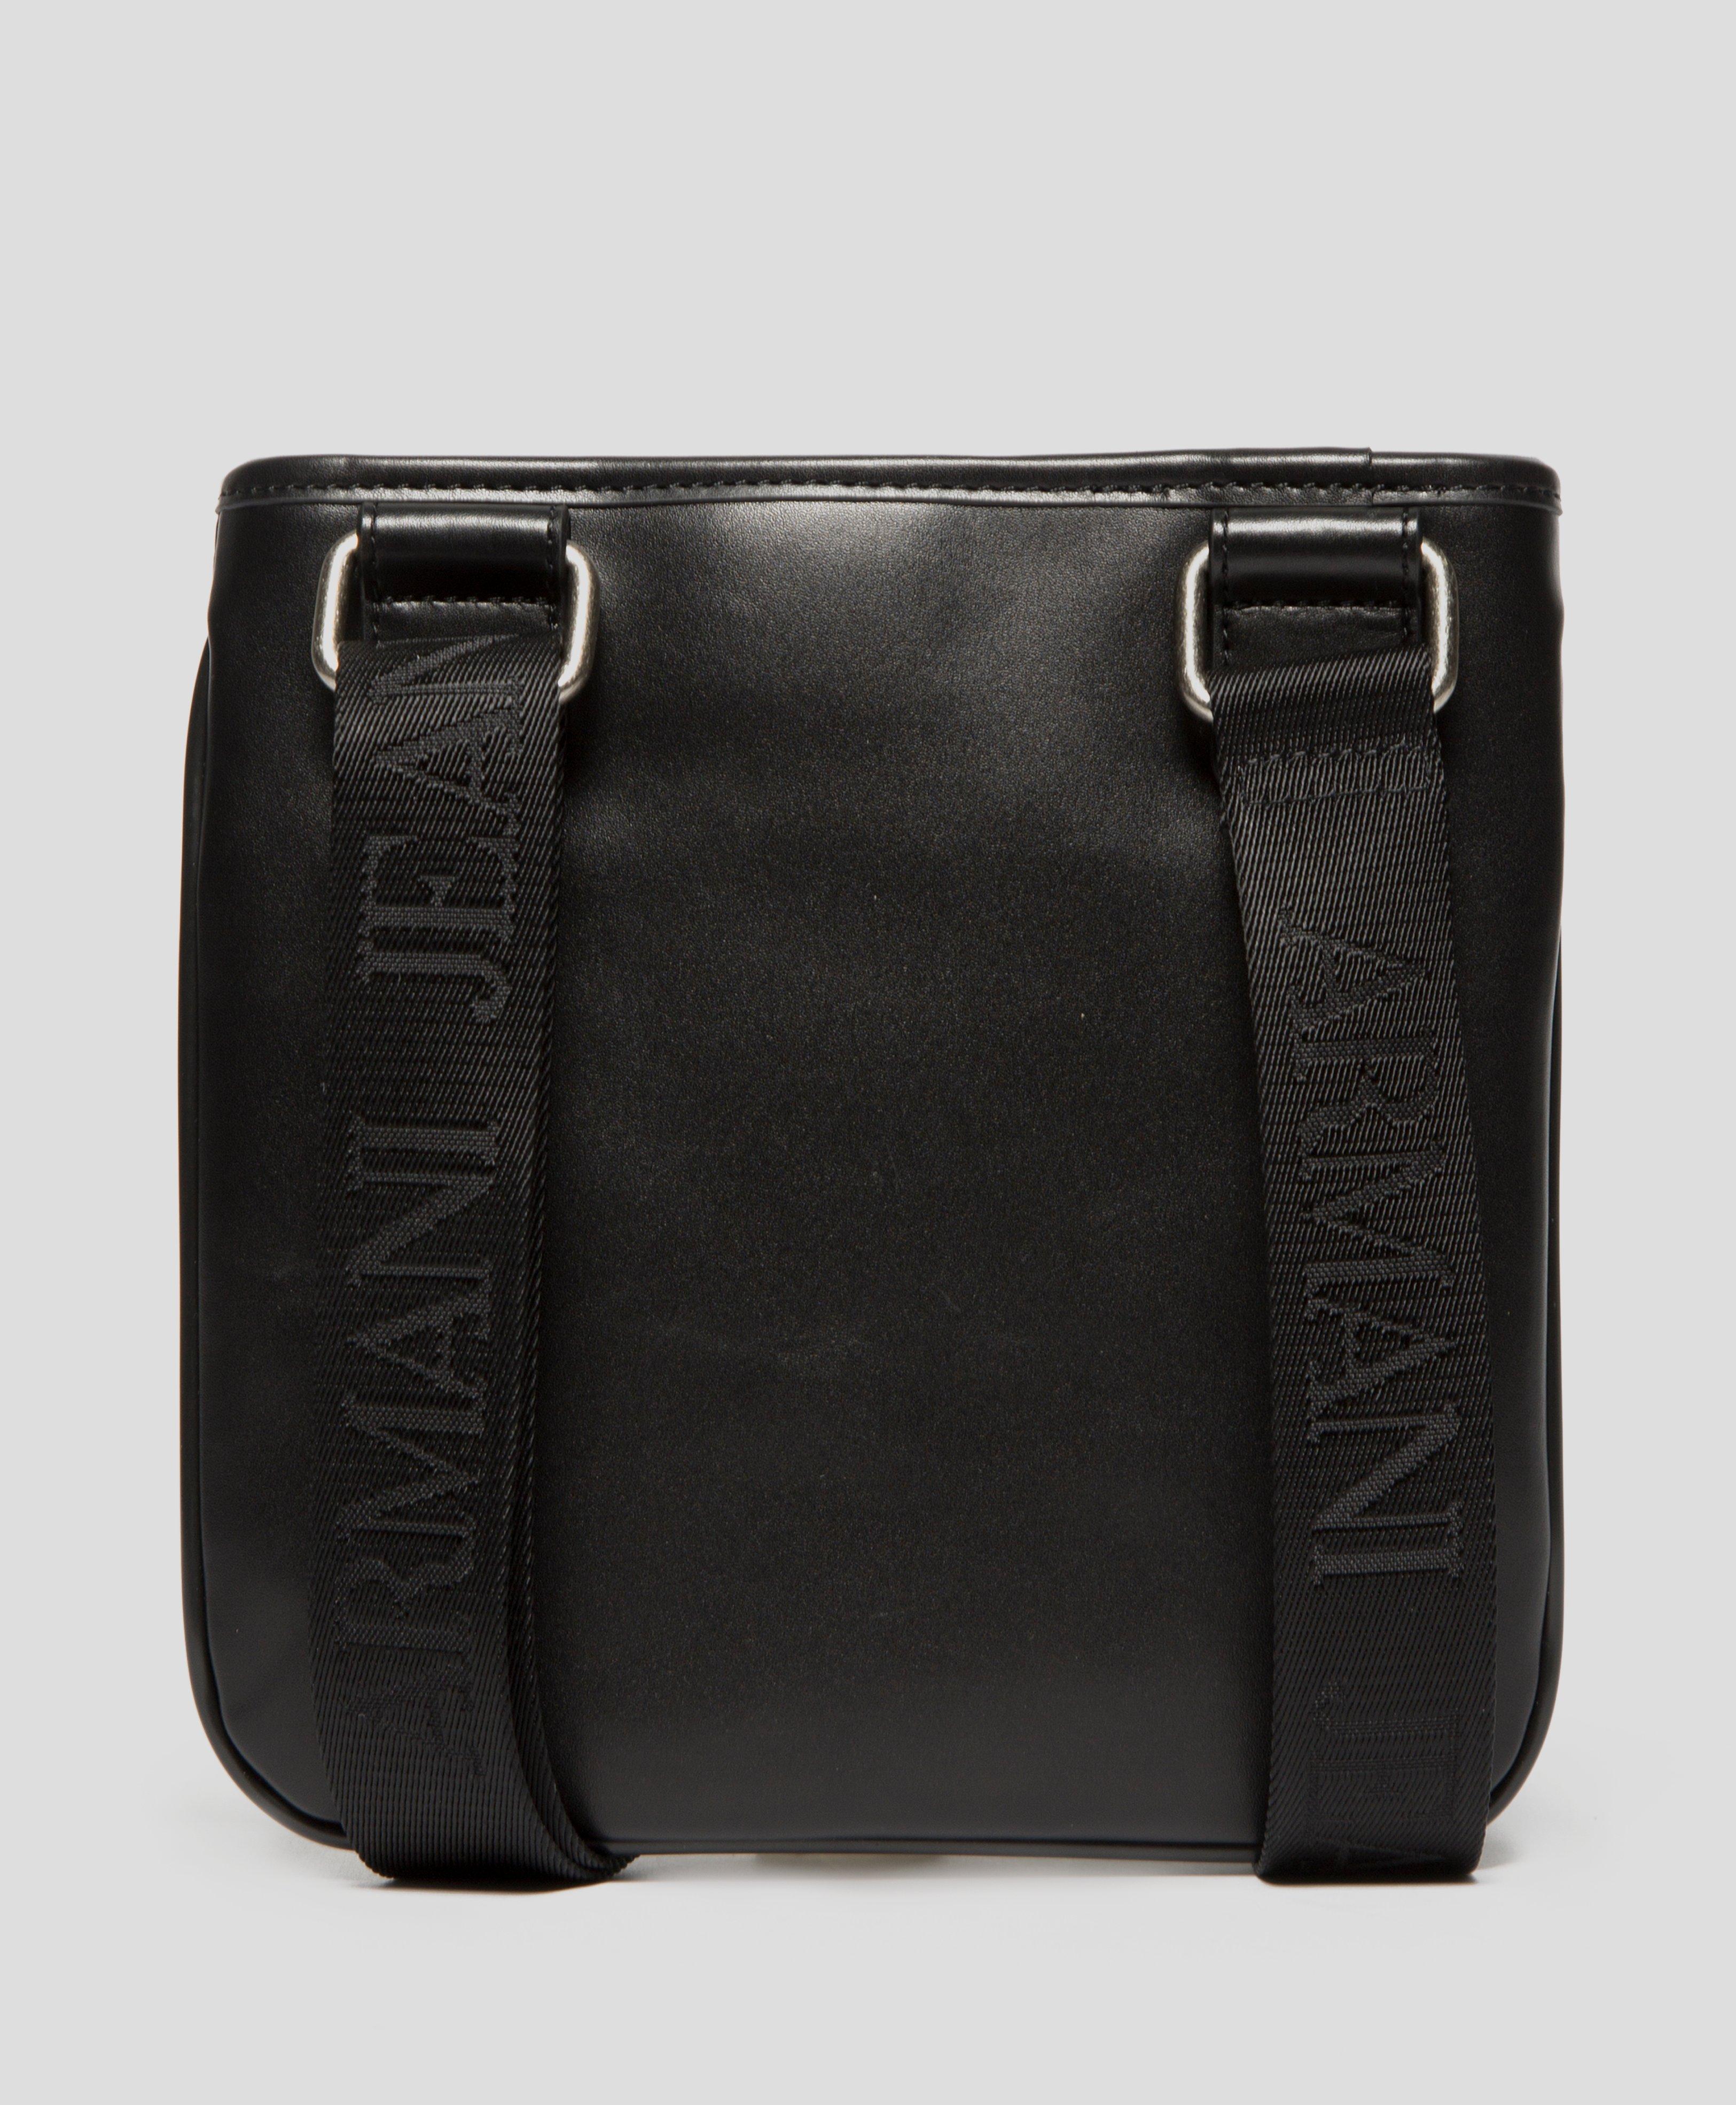 armani small items bag